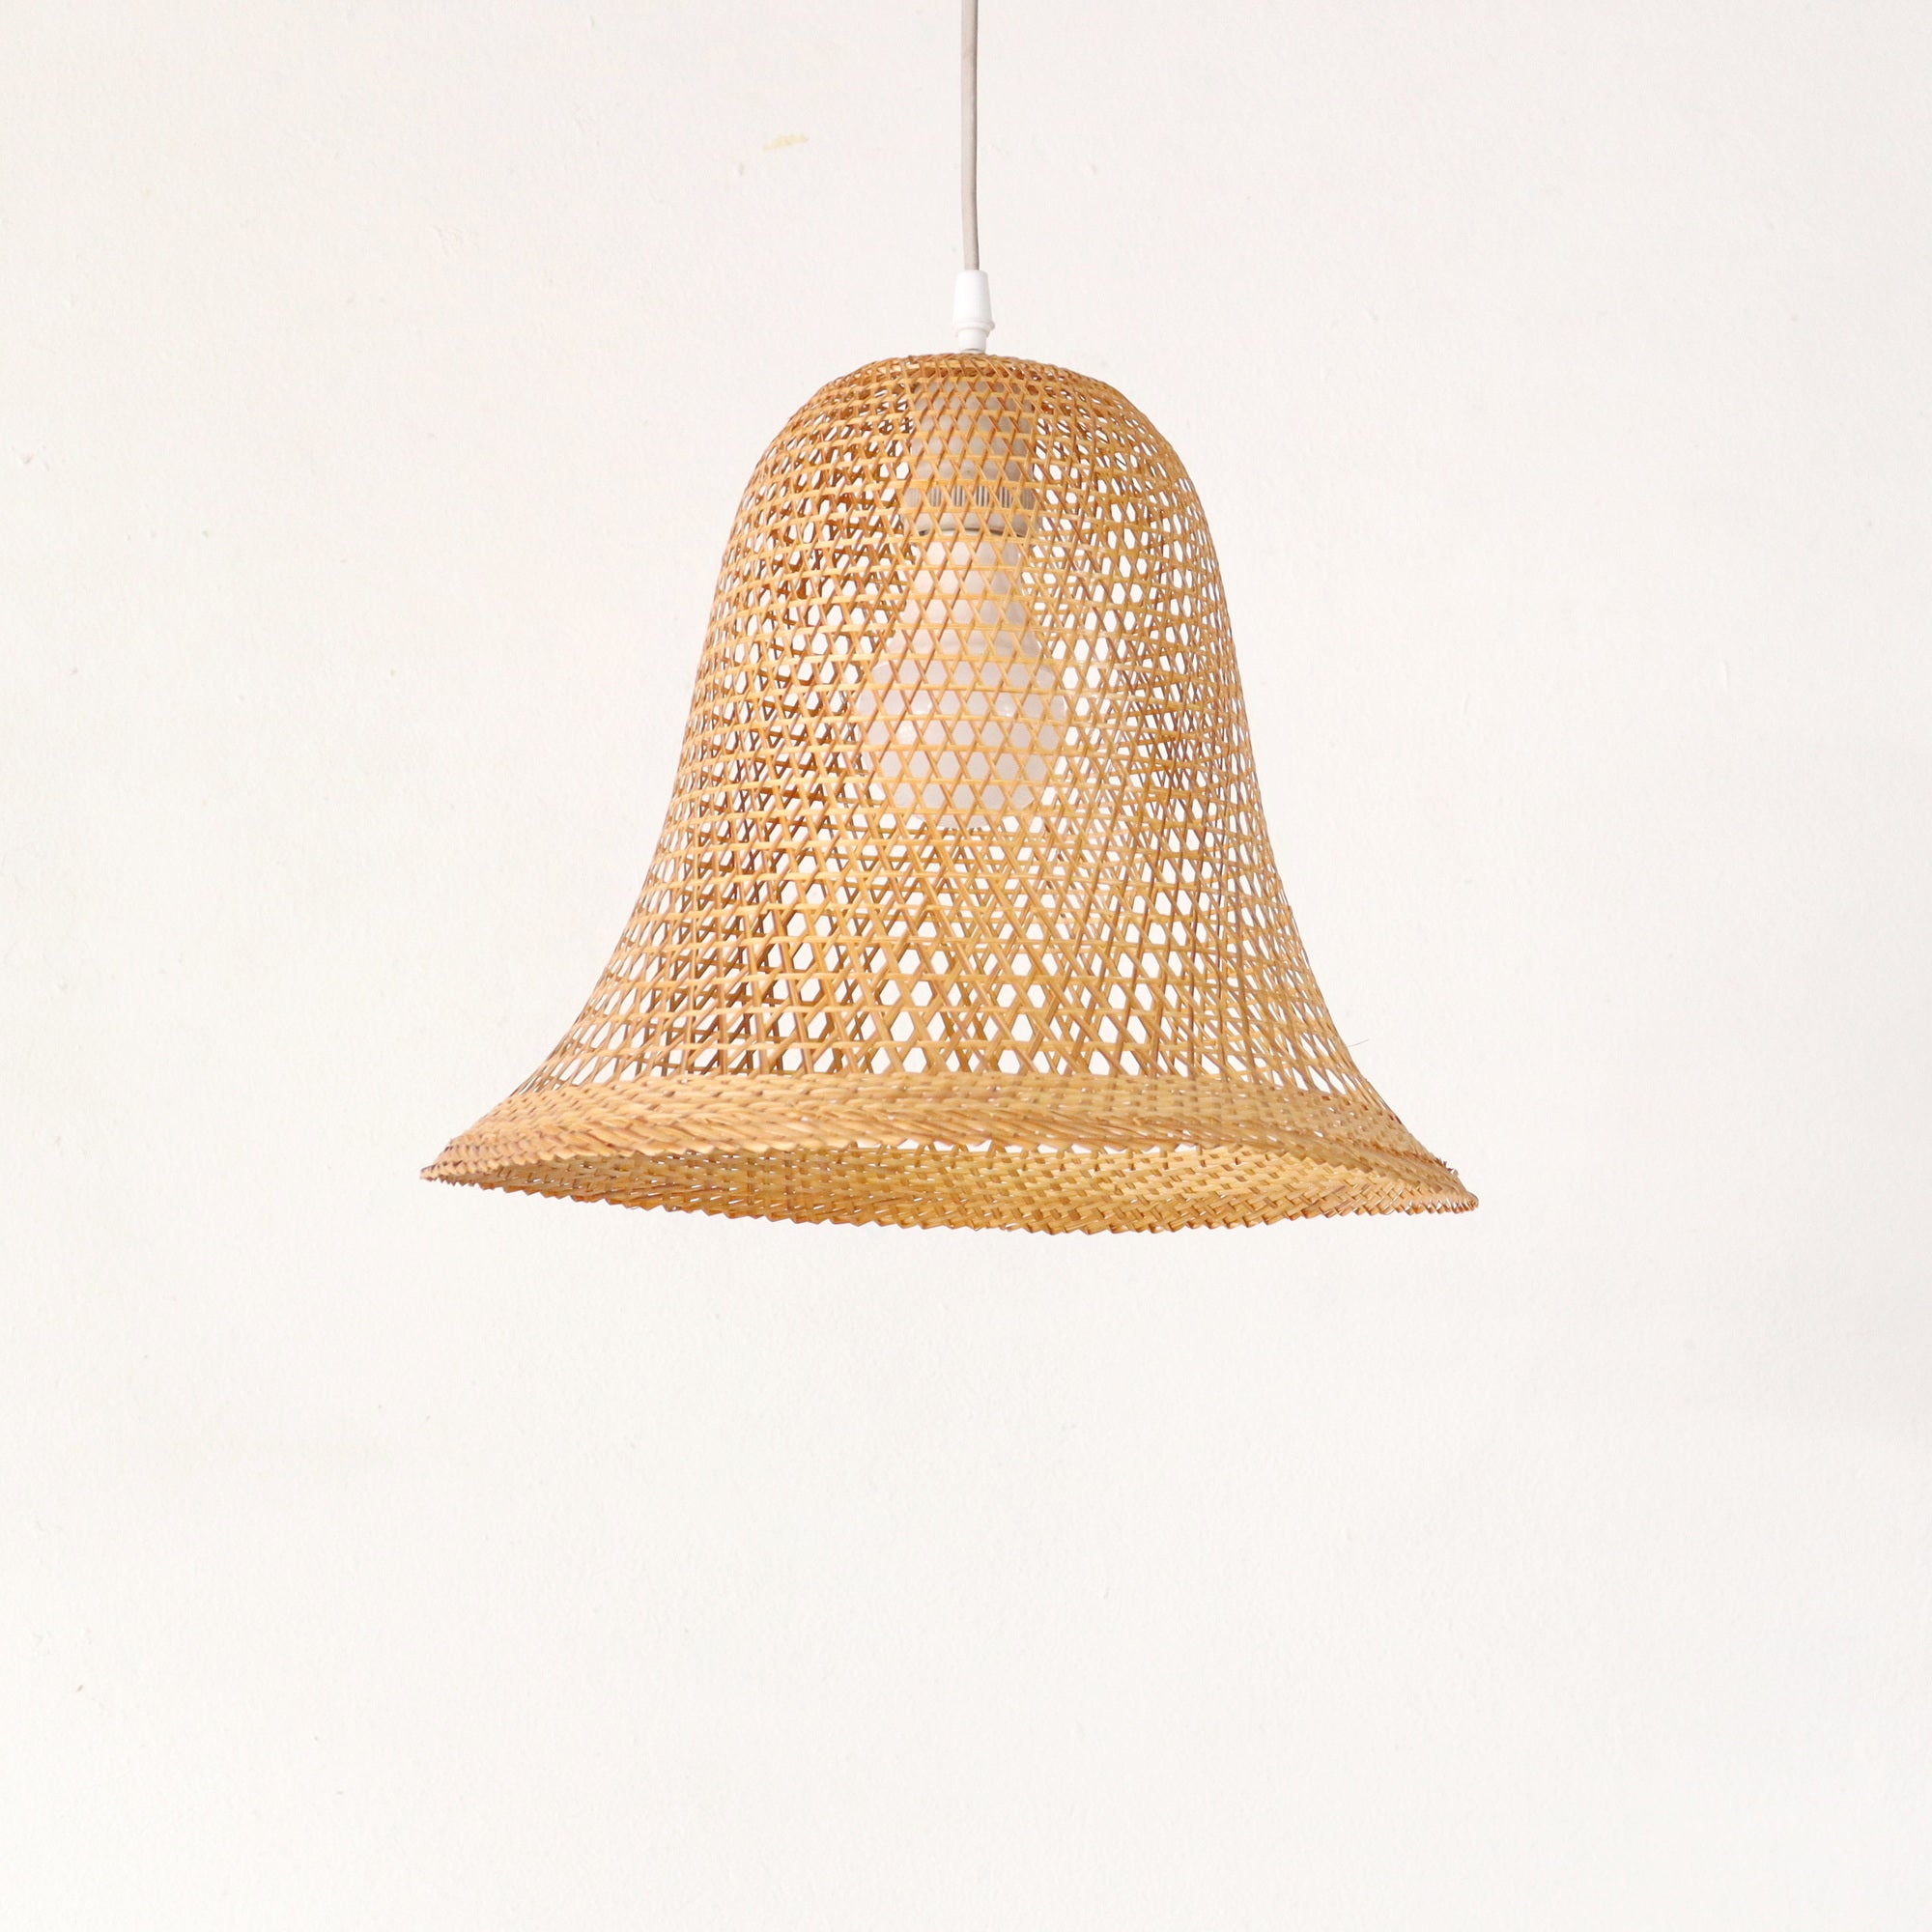 WANA - Lámpara colgante de bambú